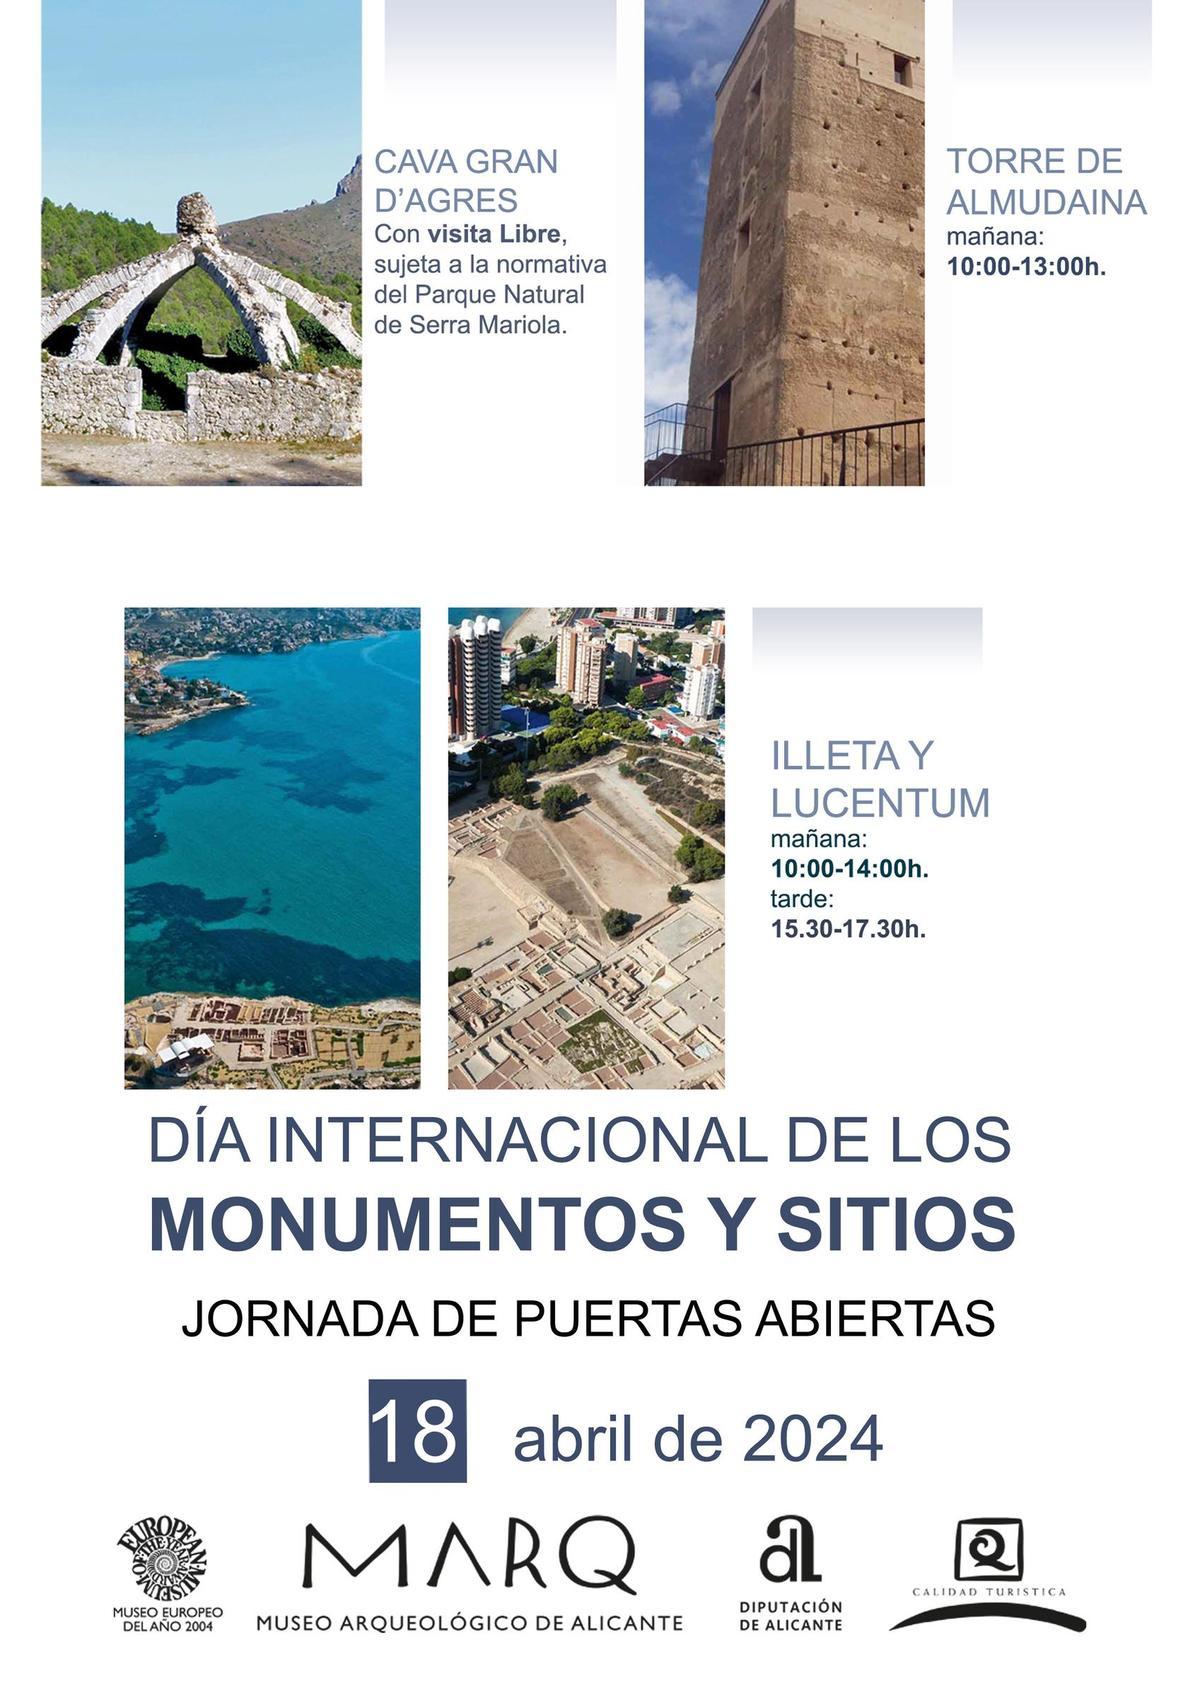 Cartel oficial del Día de los Monumentos